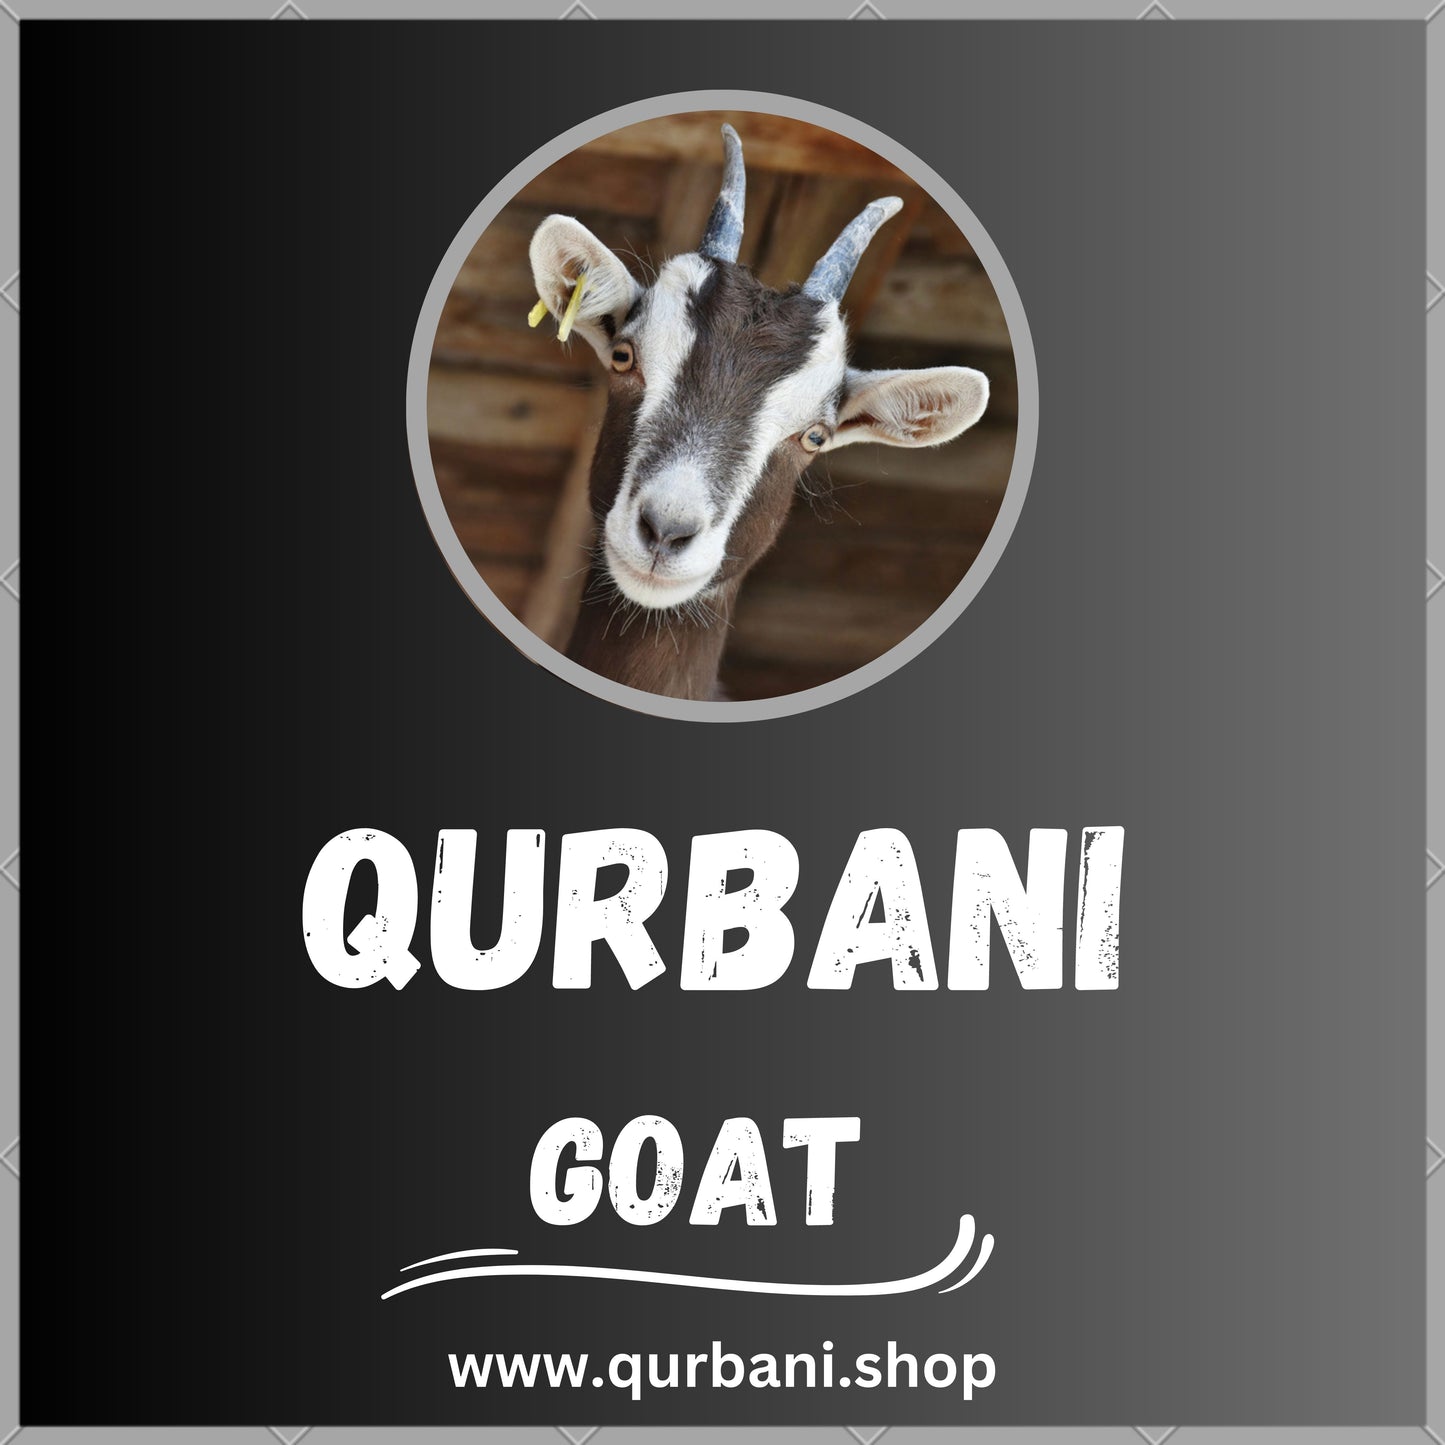 Premium Qurbani Services in Peoria - Order Your Eid Sacrifice Now!